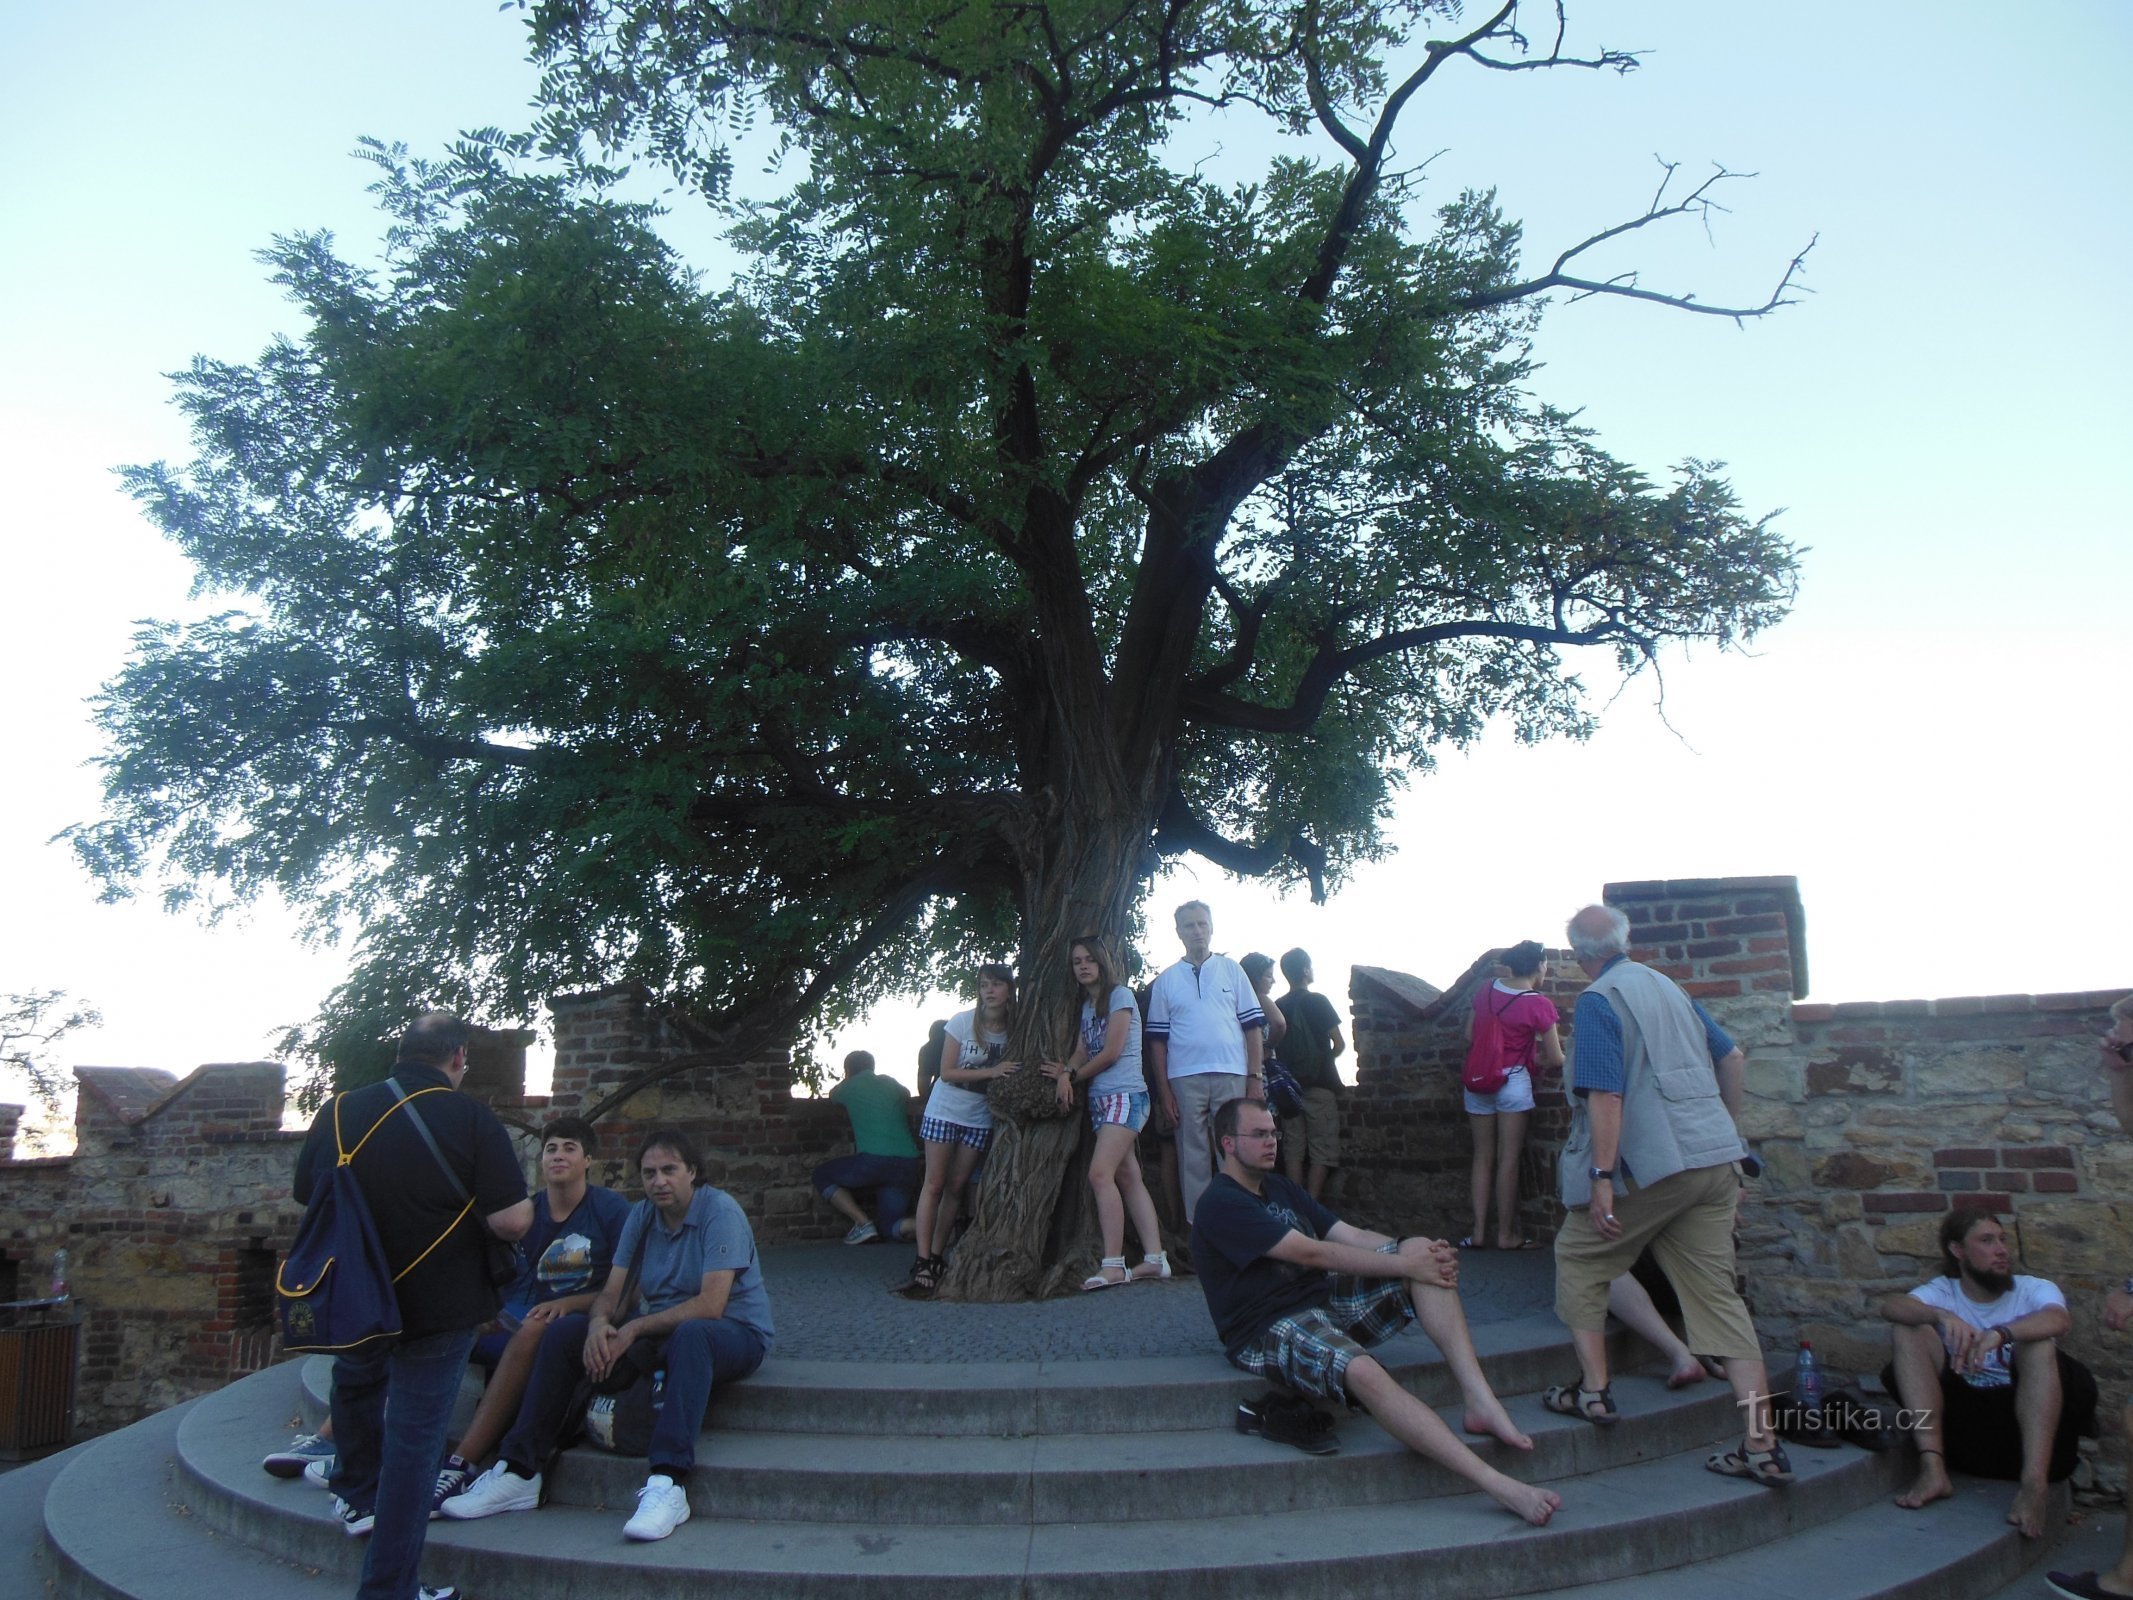 près de l'arbre avec notre grand-père, qui fut notre premier guide à Prague